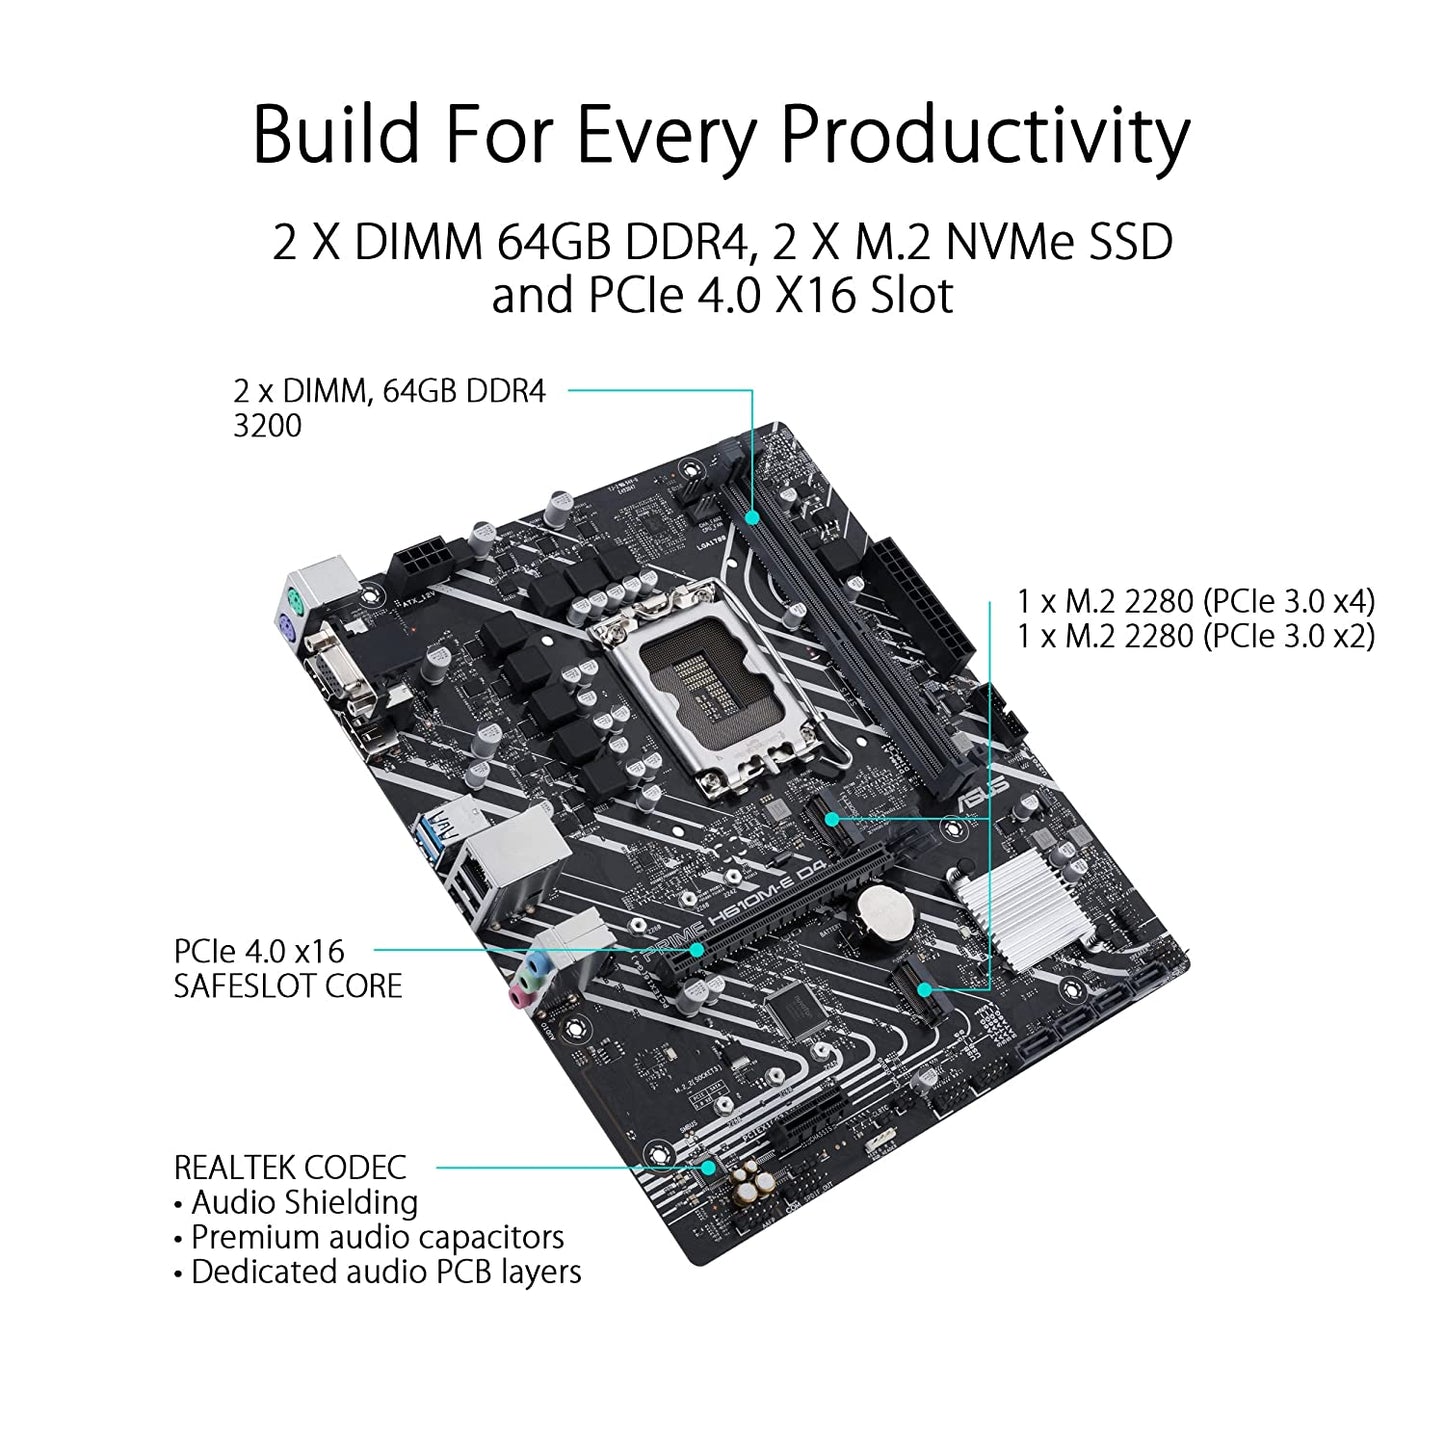 ASUS Prime H610M-E D4 Intel LGA 1700 mic-ATX Motherboard